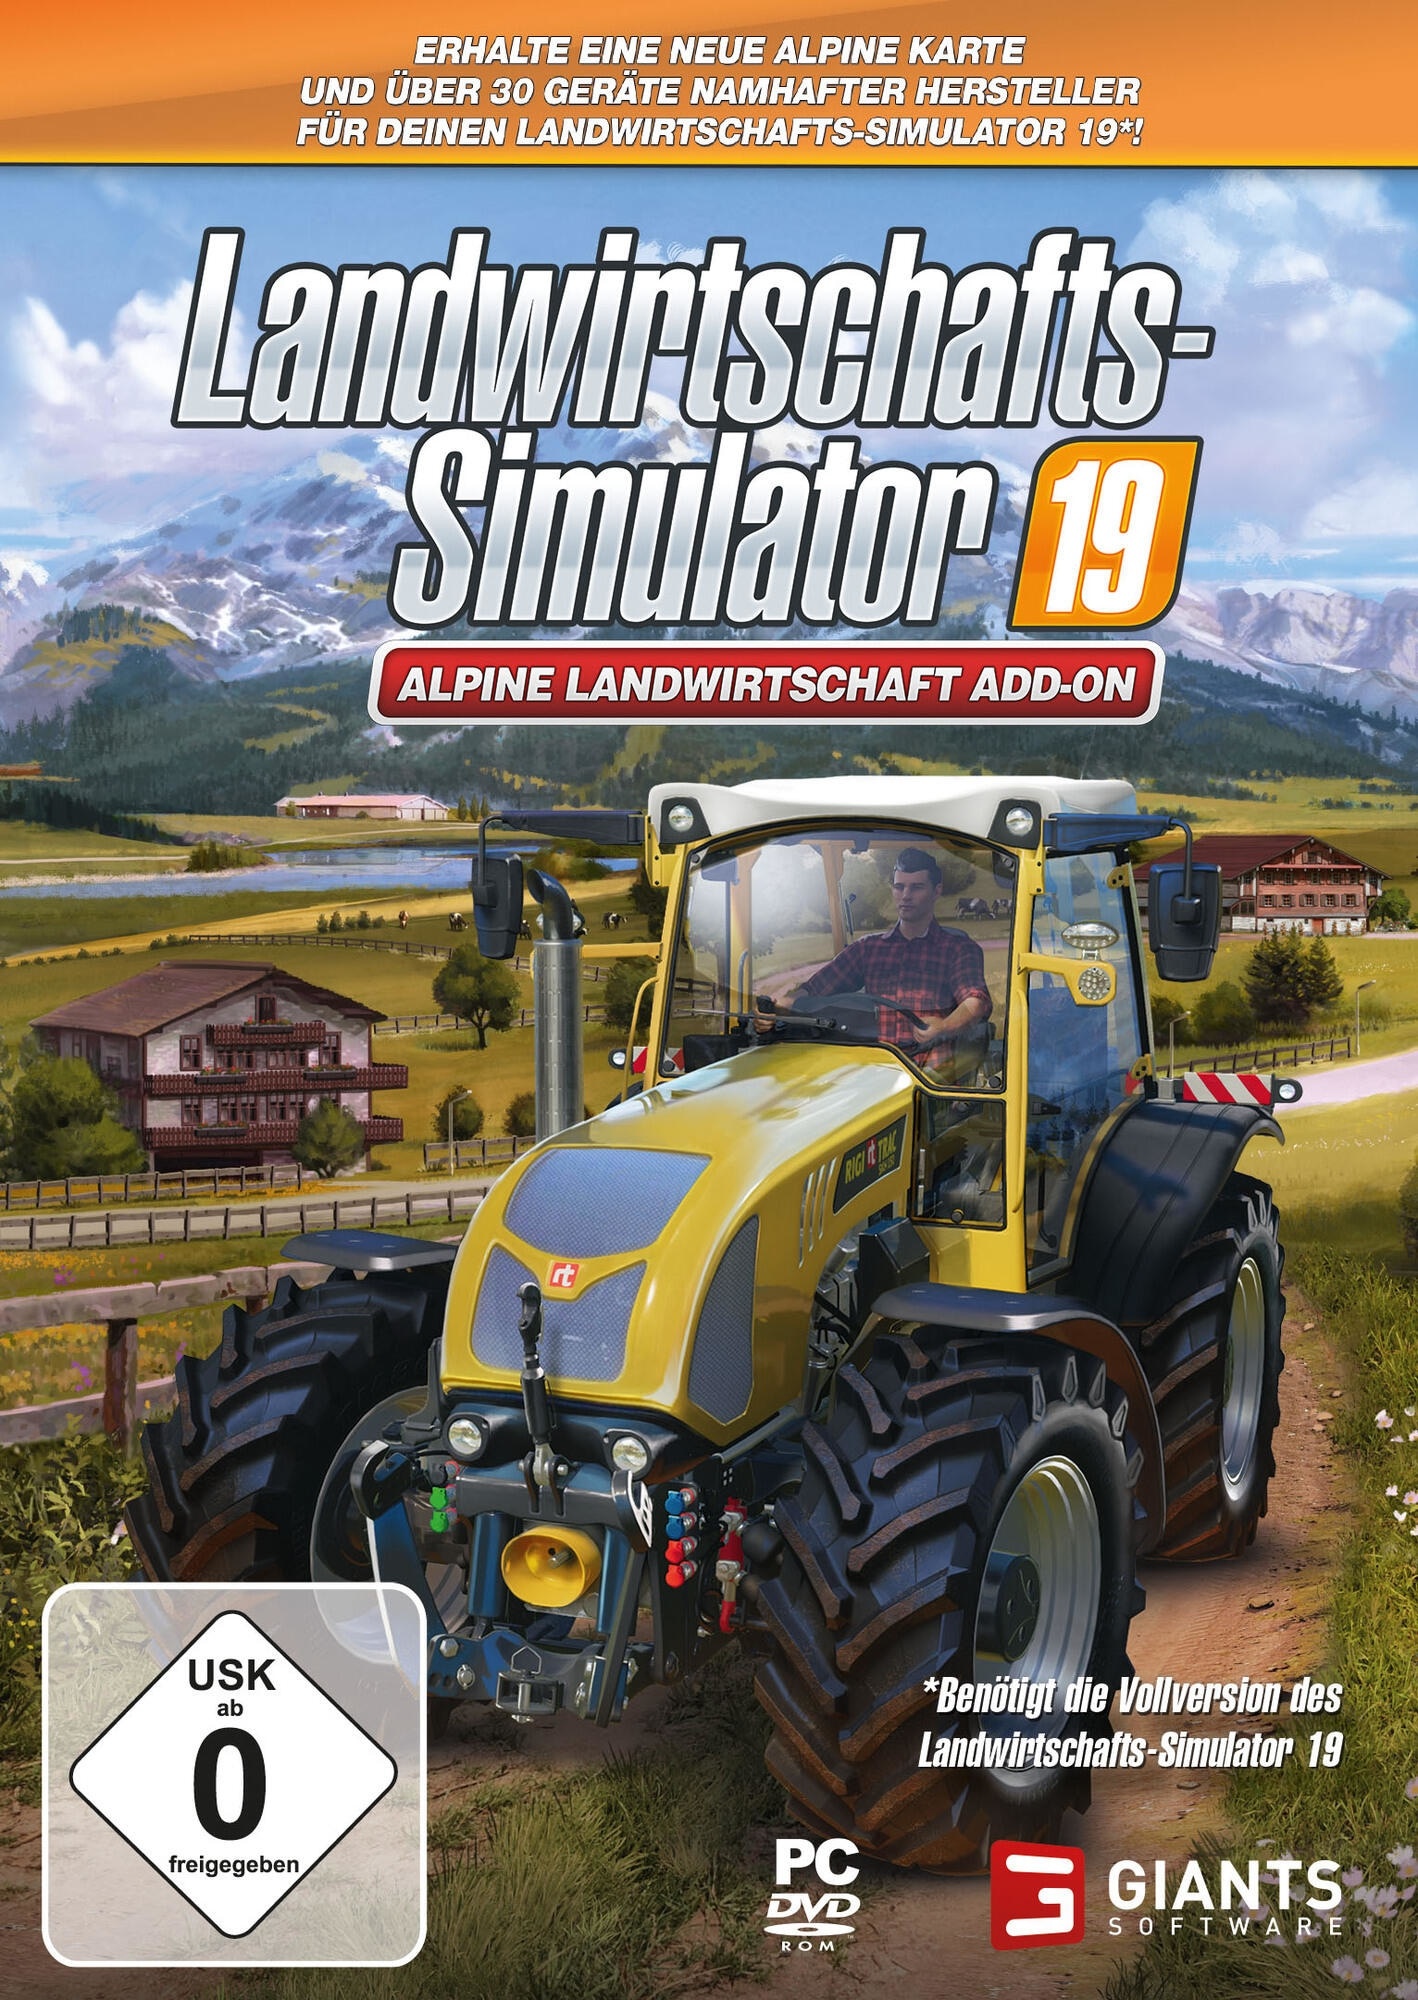 astragon, Landwirtschafts Simulator 19 Alpine Landwirtschaft Add On PC USK 0